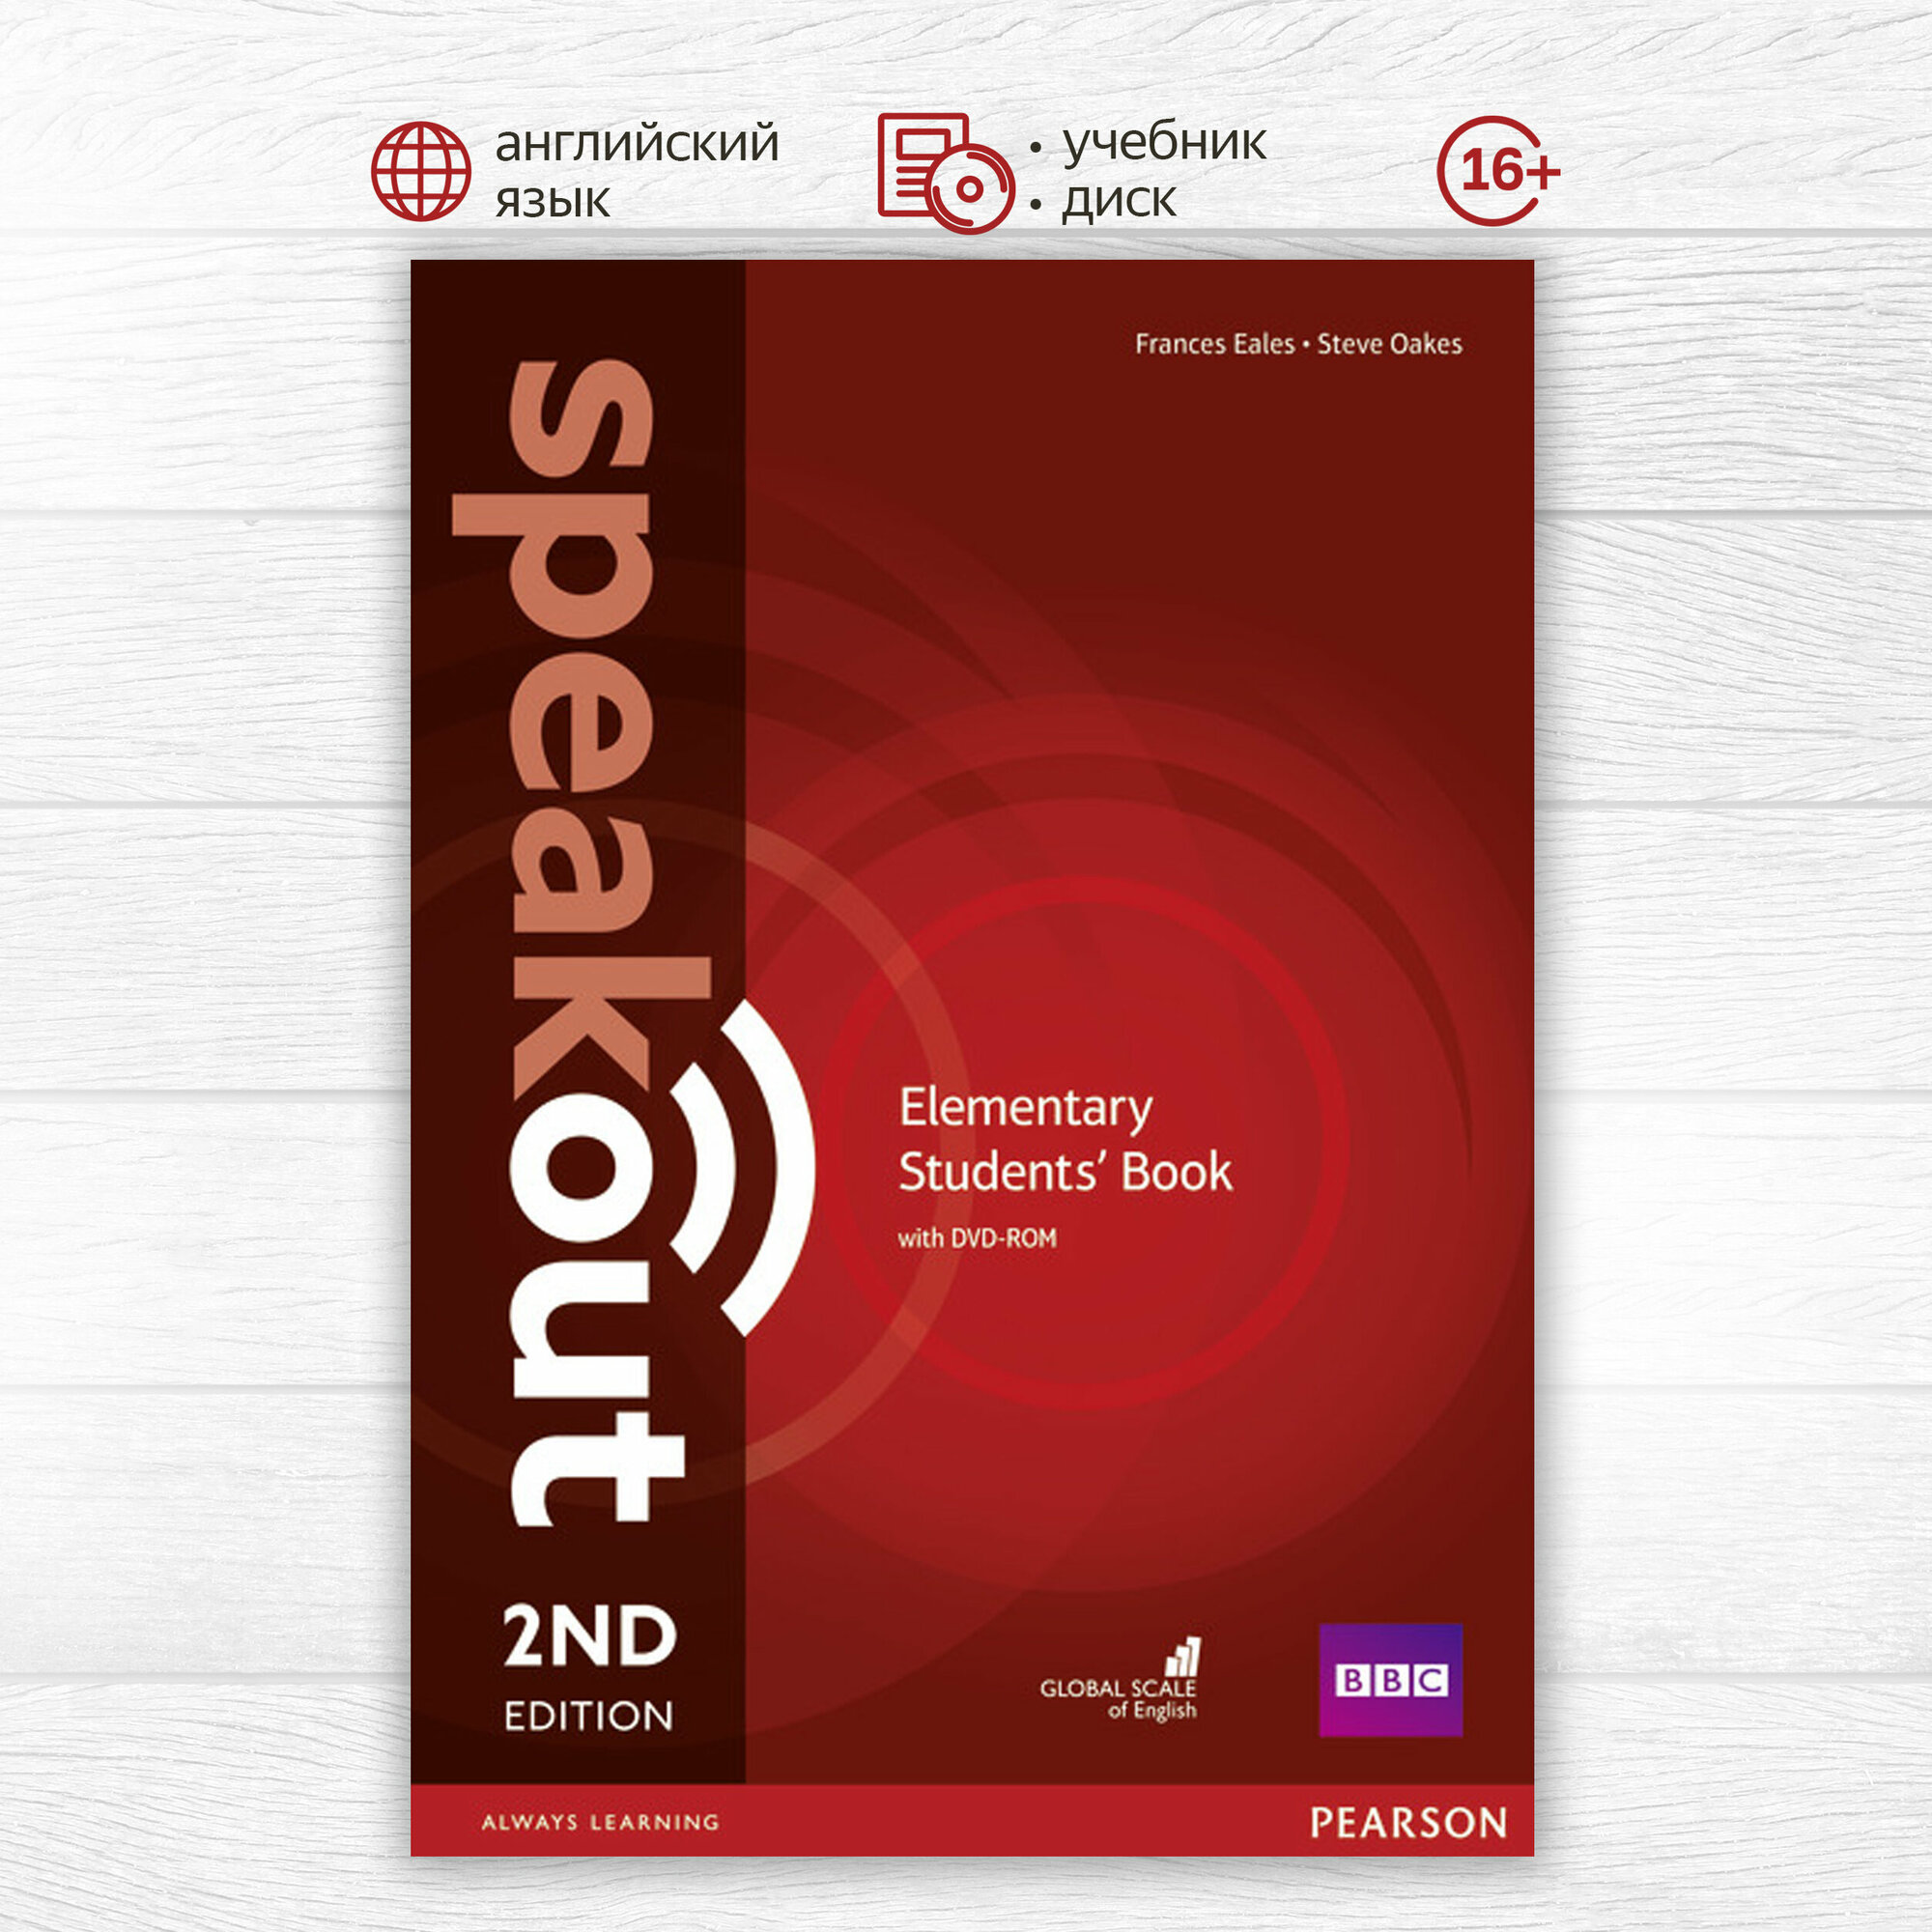 Speakout Second Edition Elementary Student's Book and DVD-ROM, учебник по английскому языку для студентов и взрослых